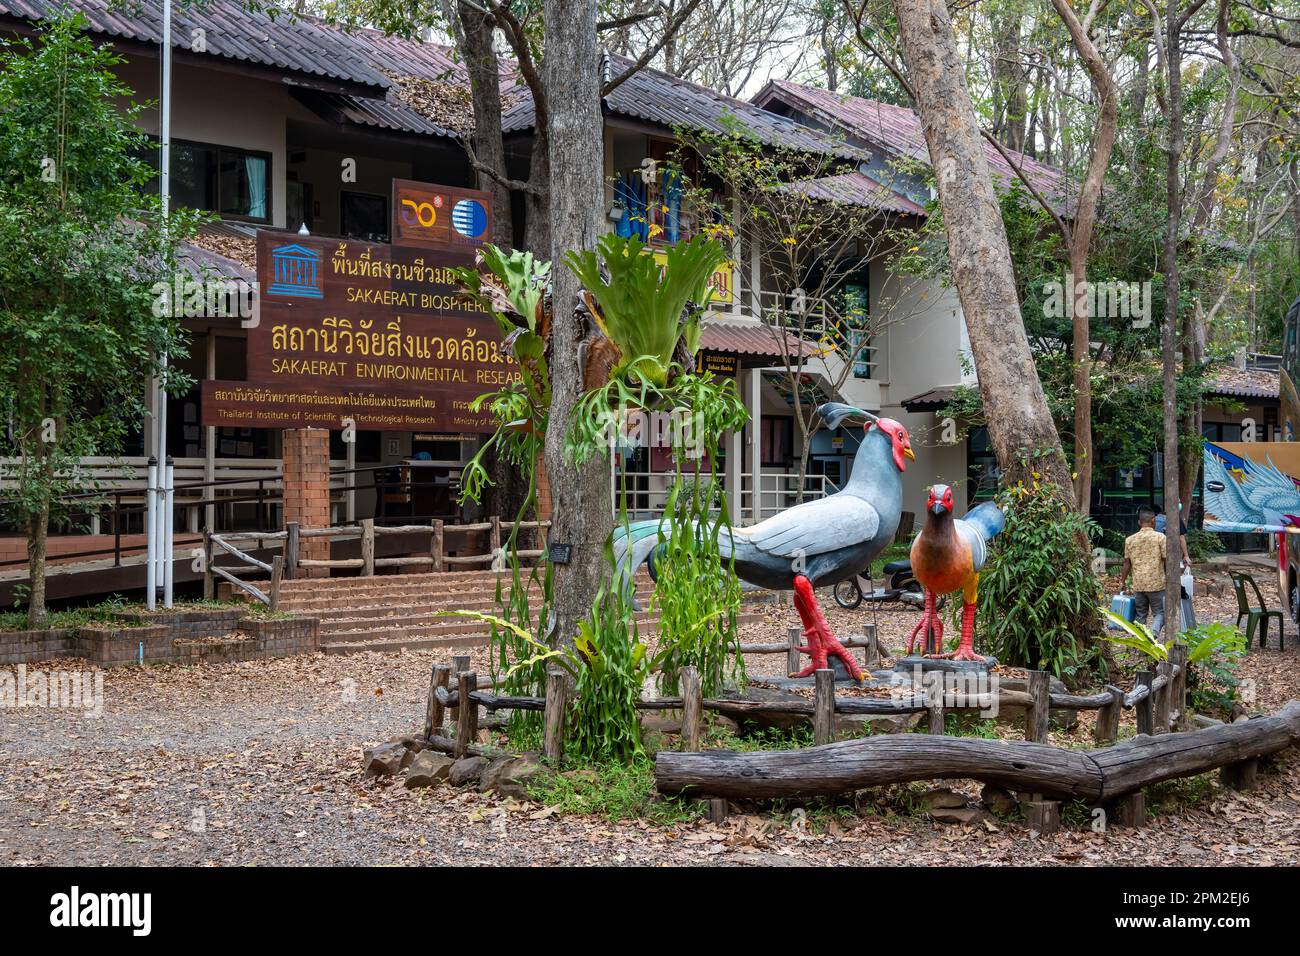 Statue d'un faisan siamois à la Station de recherche environnementale Sakaerat, Udom SAP, Thaïlande. Banque D'Images